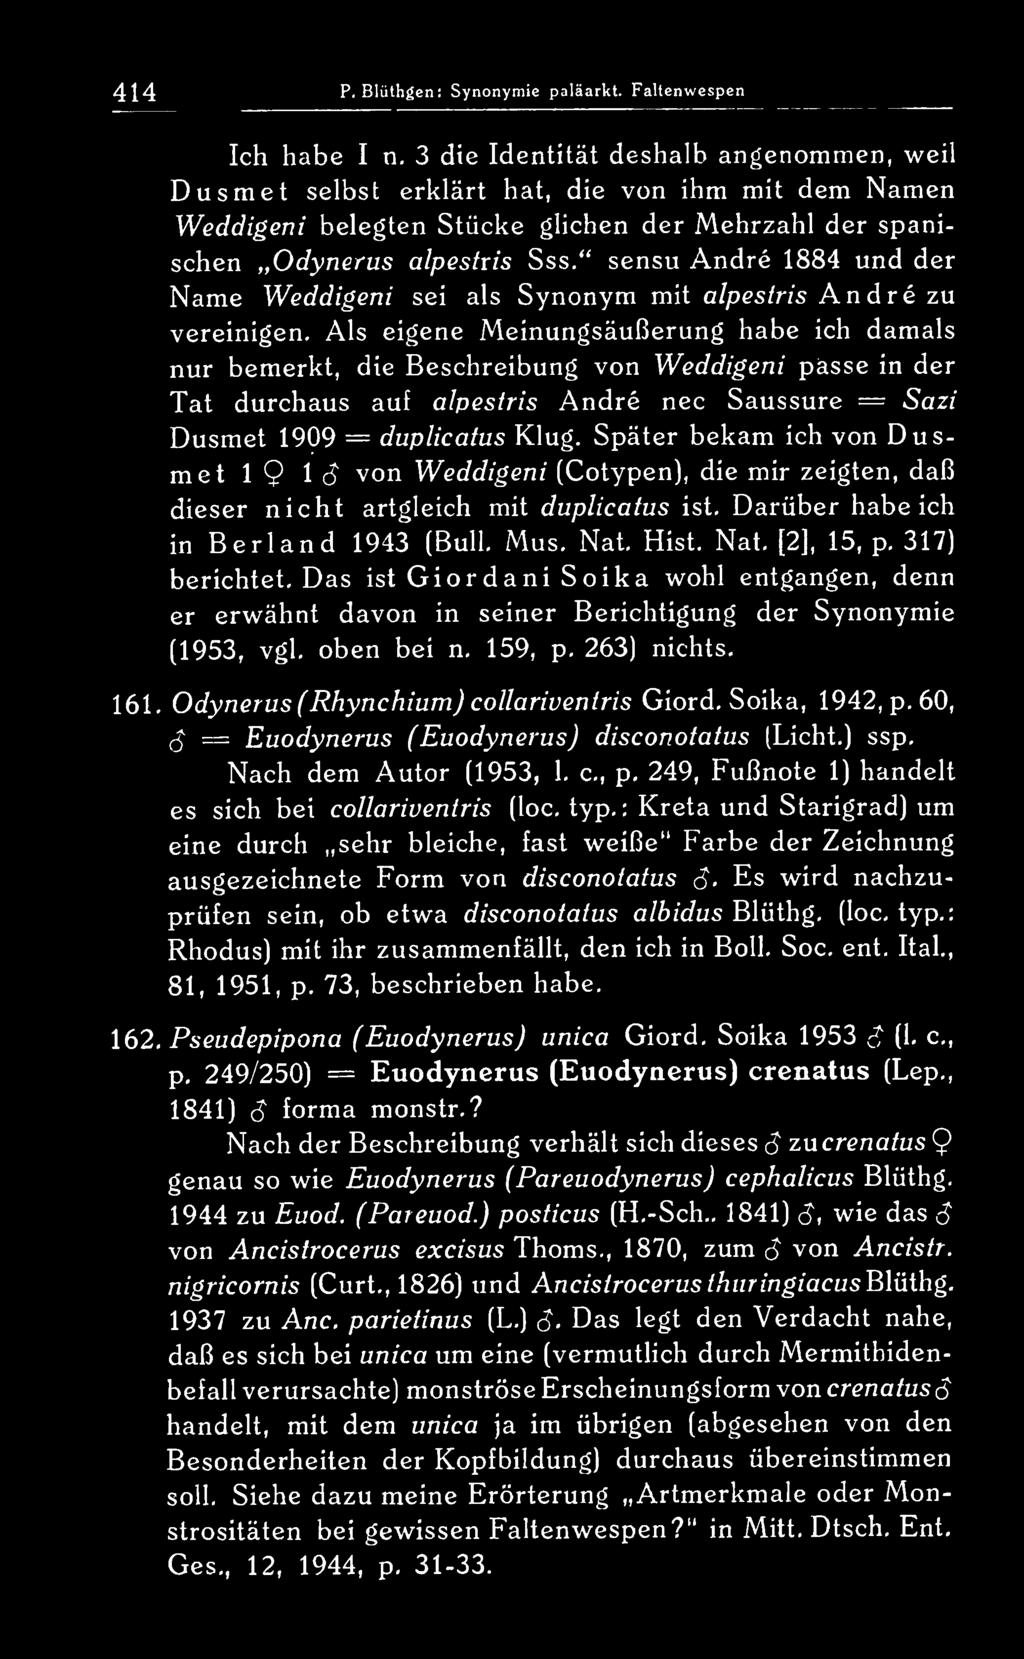 " sensu Andre 1884 und der Name Weddigeni sei als Synonym mit alpestris Andre zu vereinigen.